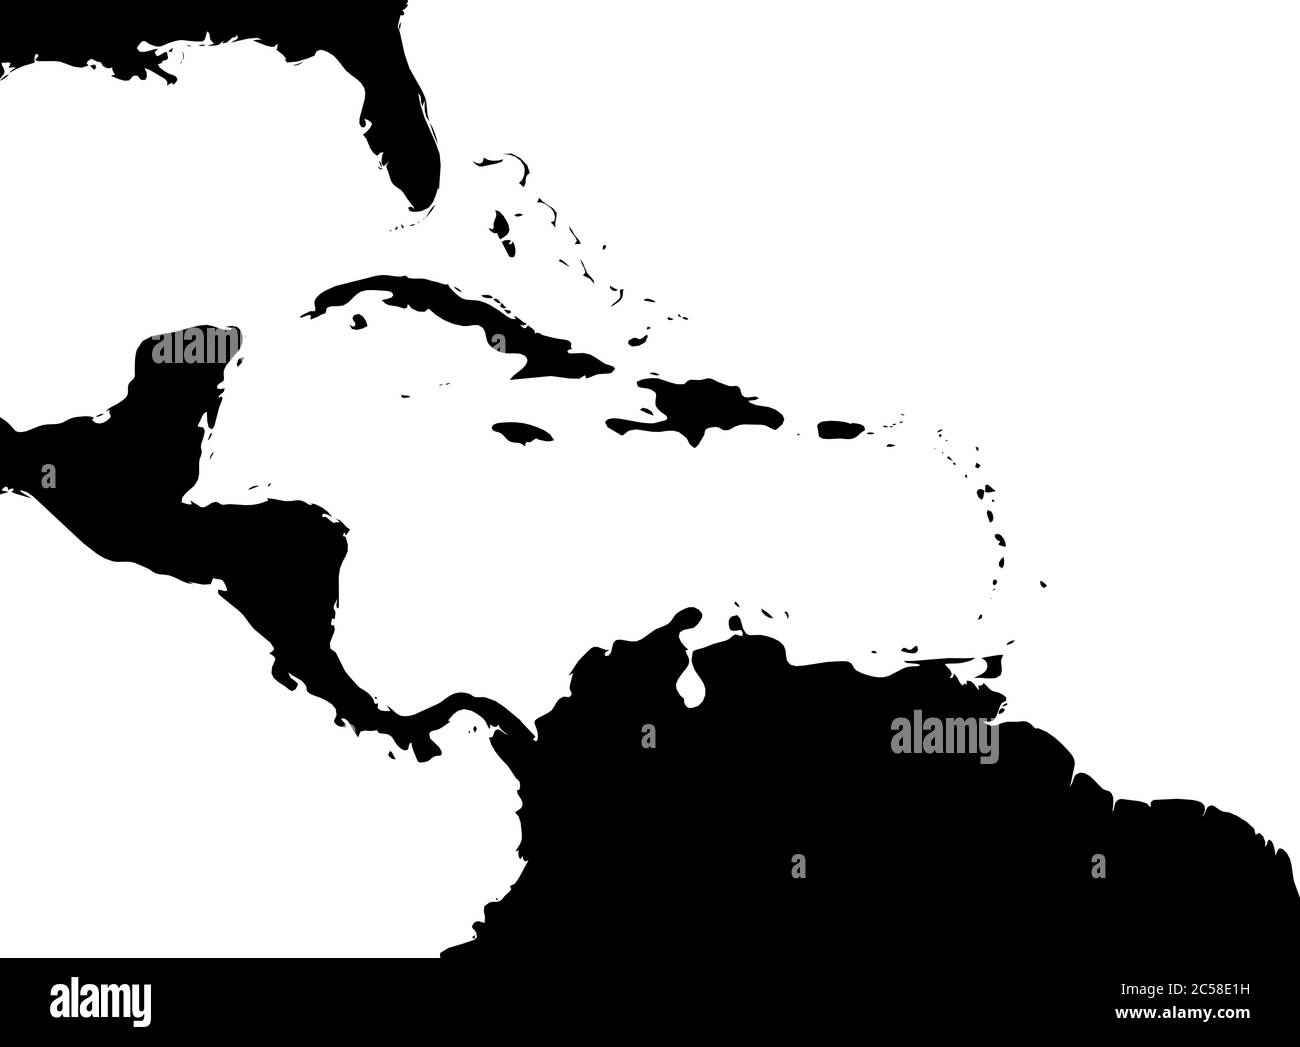 Mappa della regione dei Caraibi e dell'America Centrale. Profilo nero e acqua bianca. Semplice illustrazione vettoriale piatta. Illustrazione Vettoriale